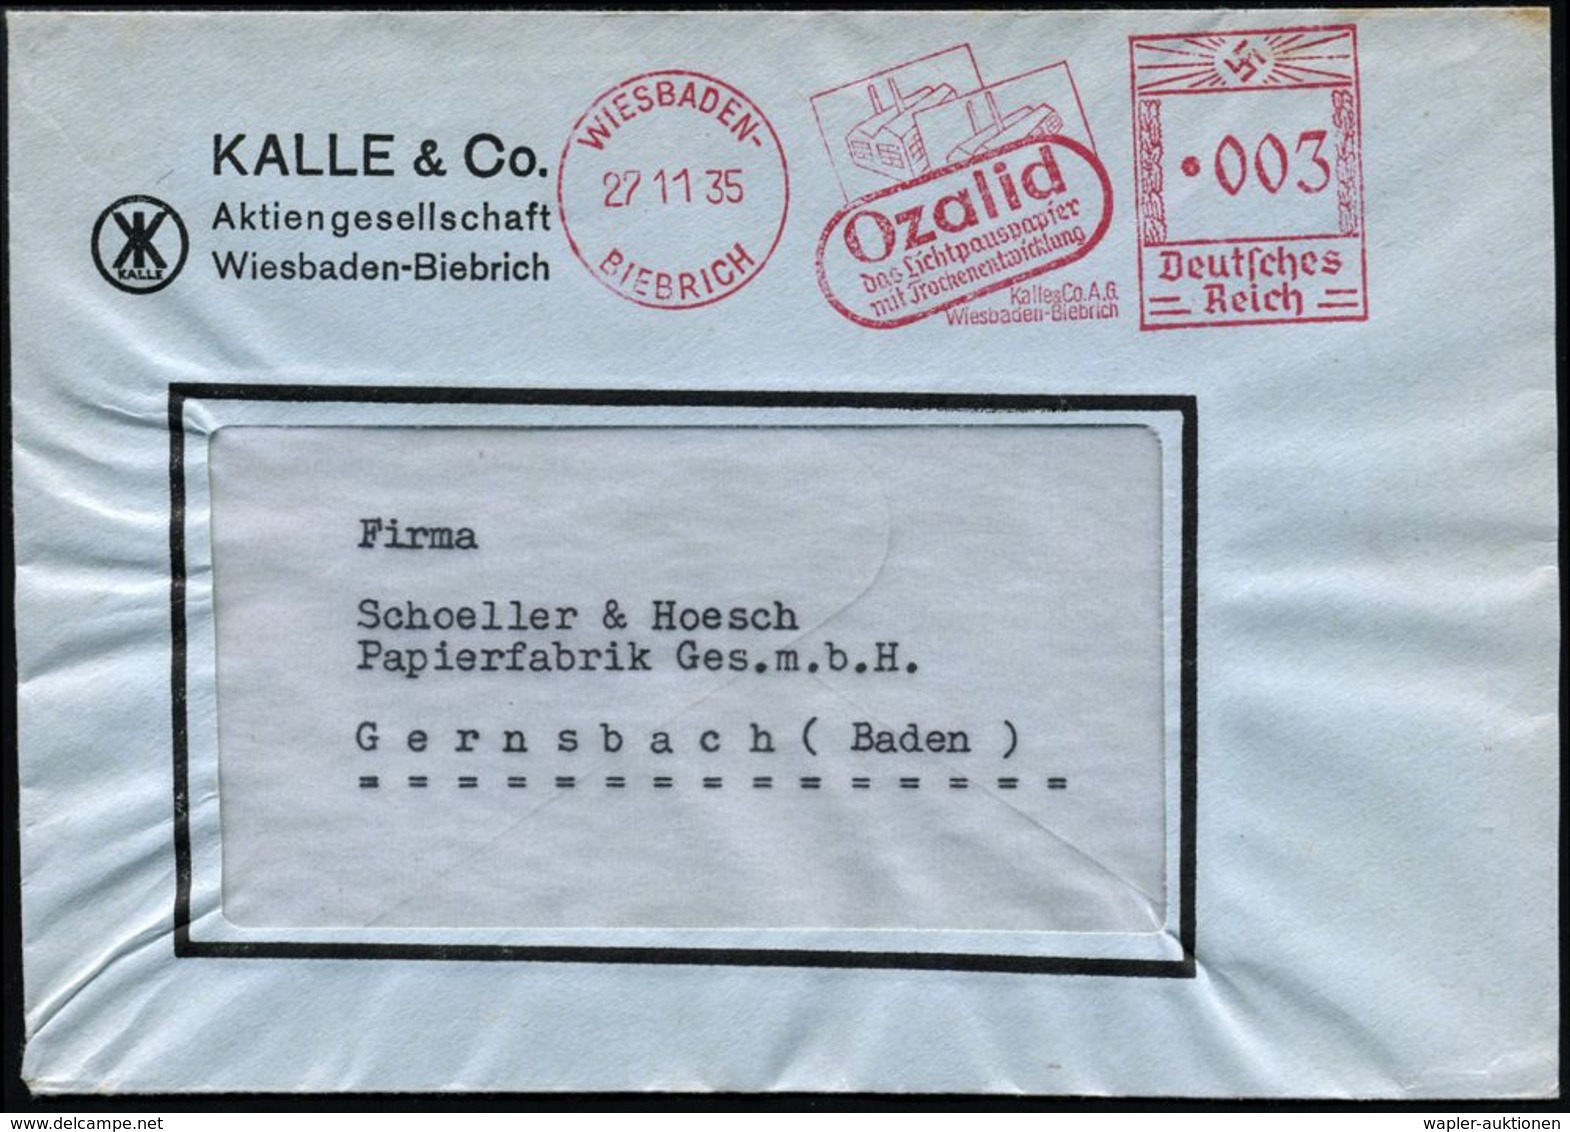 WIESBADEN-/ BIEBRICH/ Ozalid/ D.Lichtpauspapier/ Mit Trockenentwicklung/ Kalle & Co AG 1935 (27.11.) Seltener AFS (= 2 L - Chimie